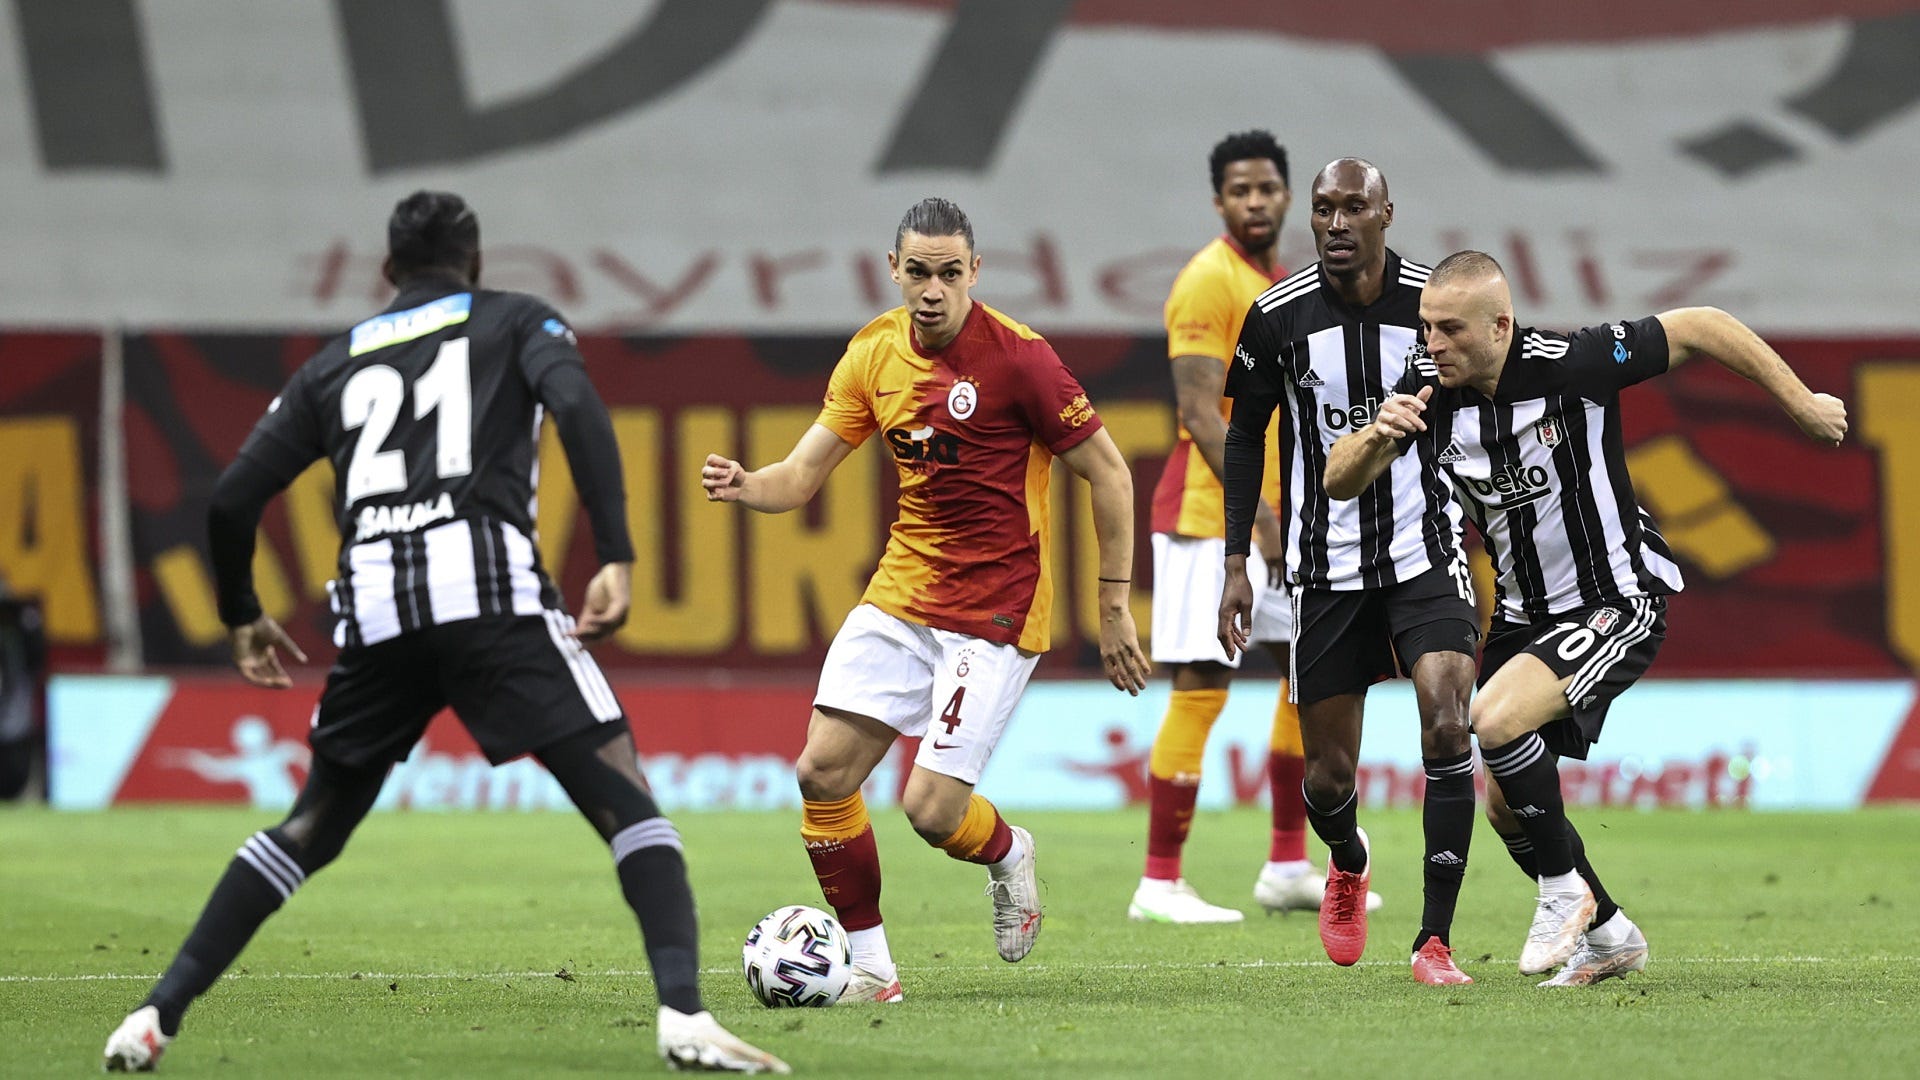 Süper Lig Galatasaray schlägt Besiktas und macht das Meisterrennen spannend